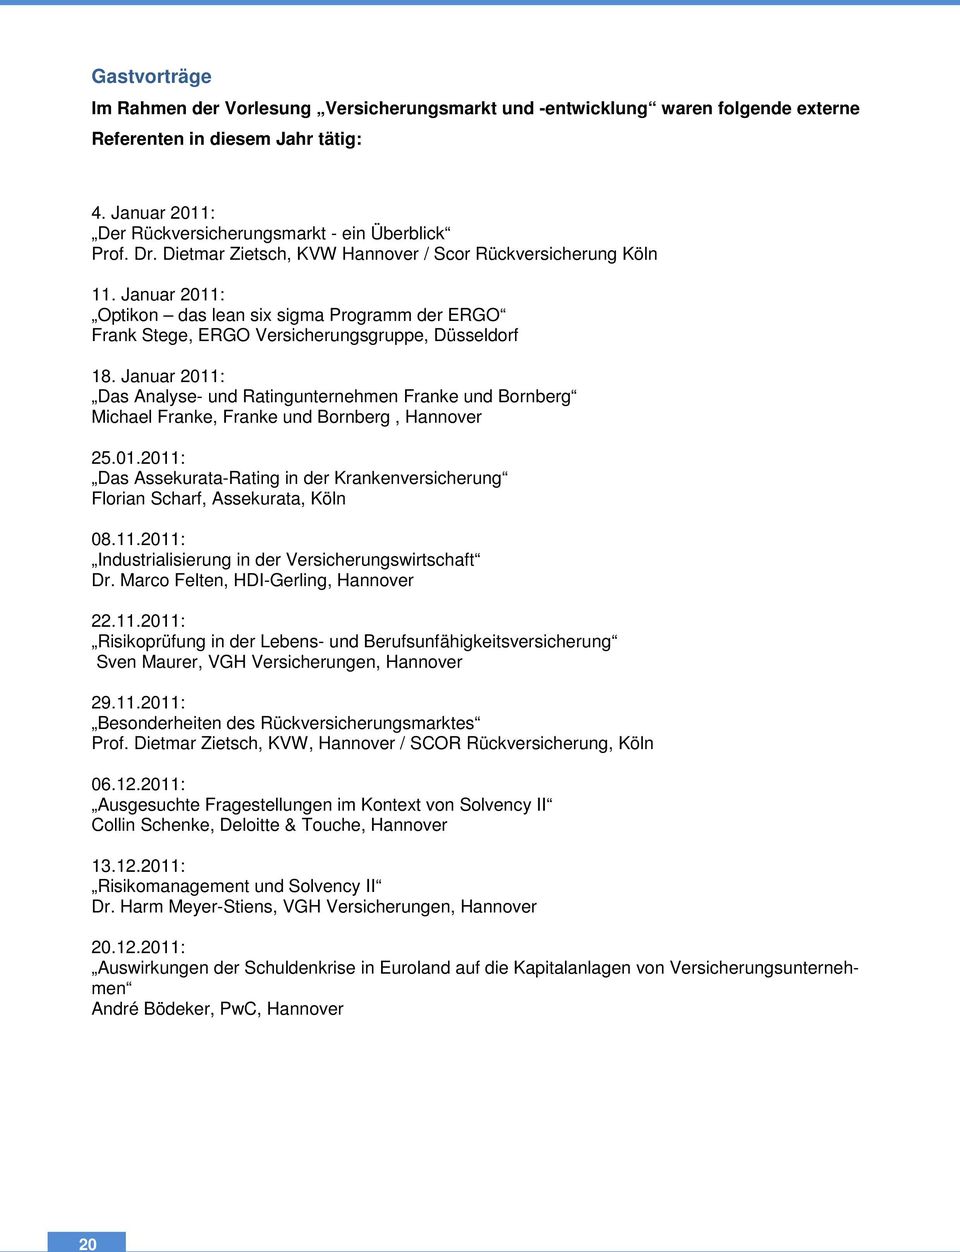 Januar 2011: Das Analyse- und Ratingunternehmen Franke und Bornberg Michael Franke, Franke und Bornberg, Hannover 25.01.2011: Das Assekurata-Rating in der Krankenversicherung Florian Scharf, Assekurata, Köln 08.